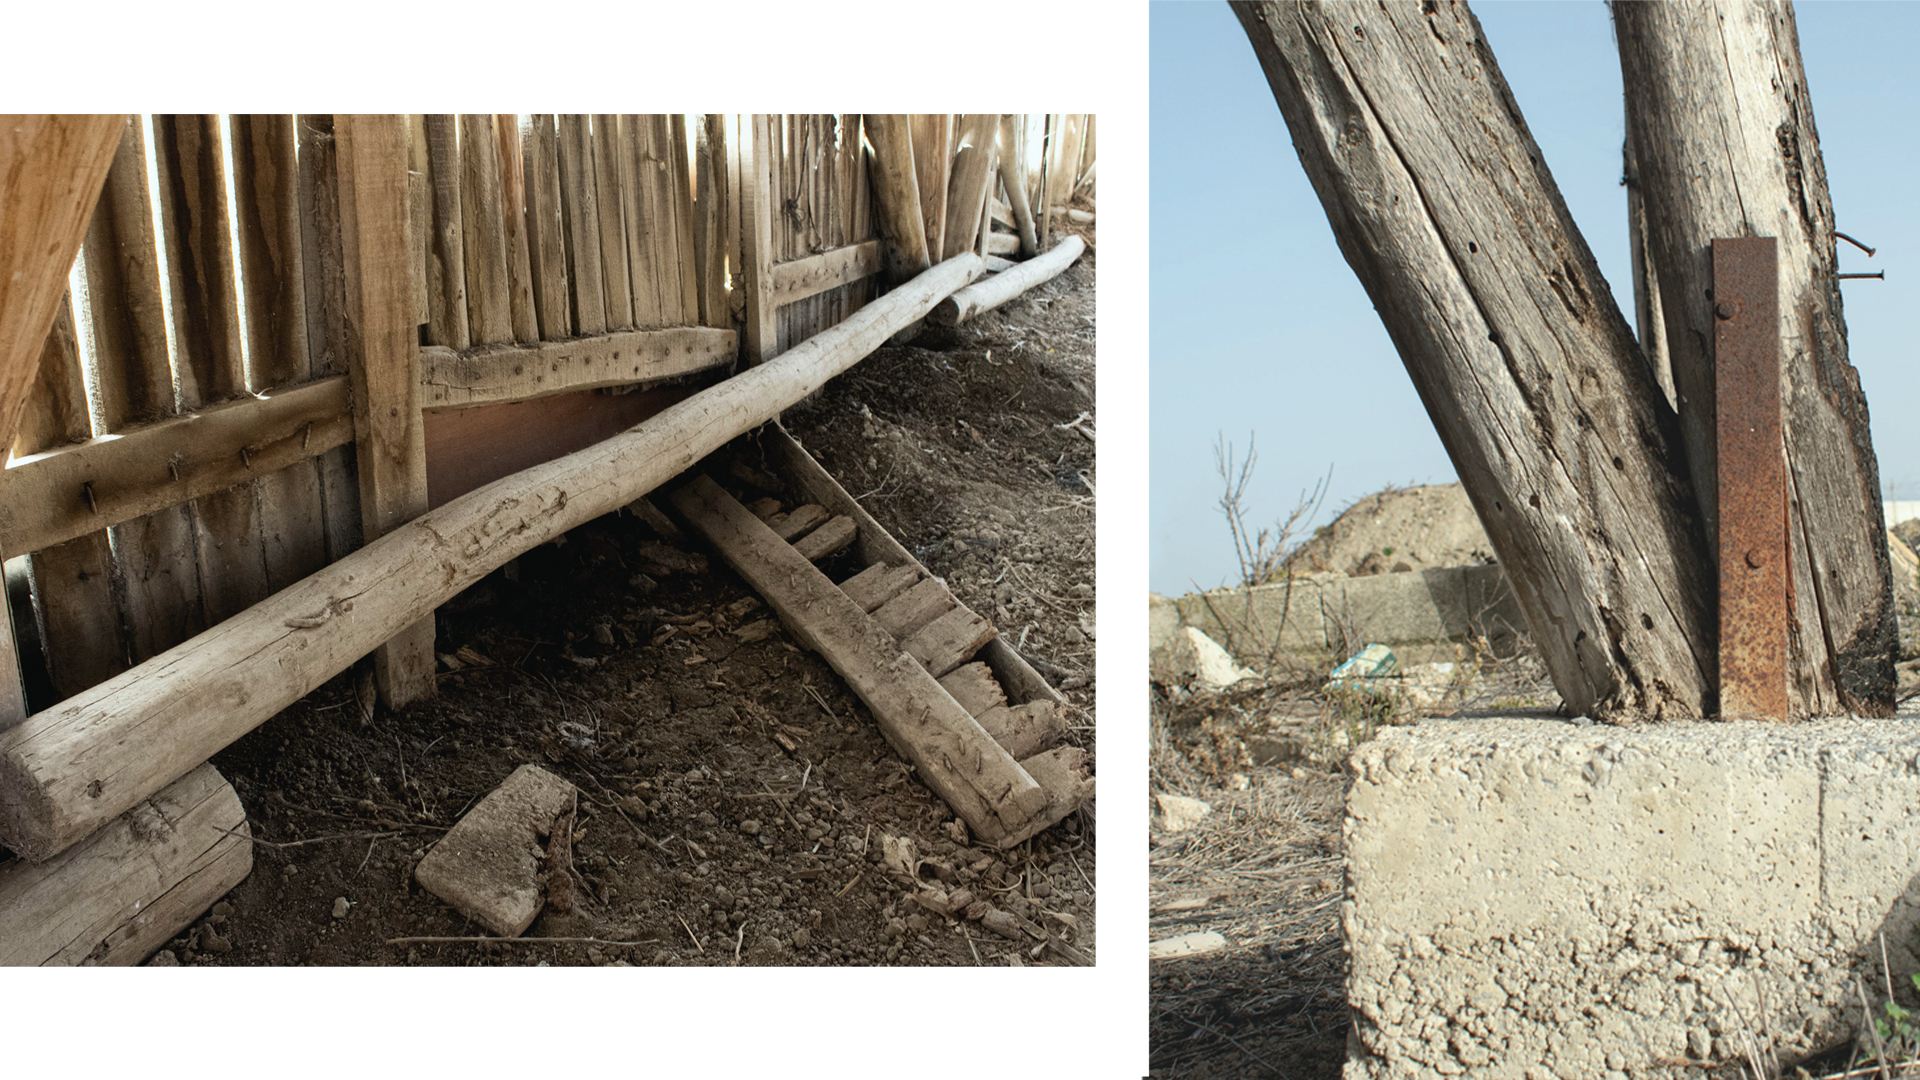 Detalle de la estructura en contacto con el terreno y cimentación. Fotografía de Alfredo Ávila.